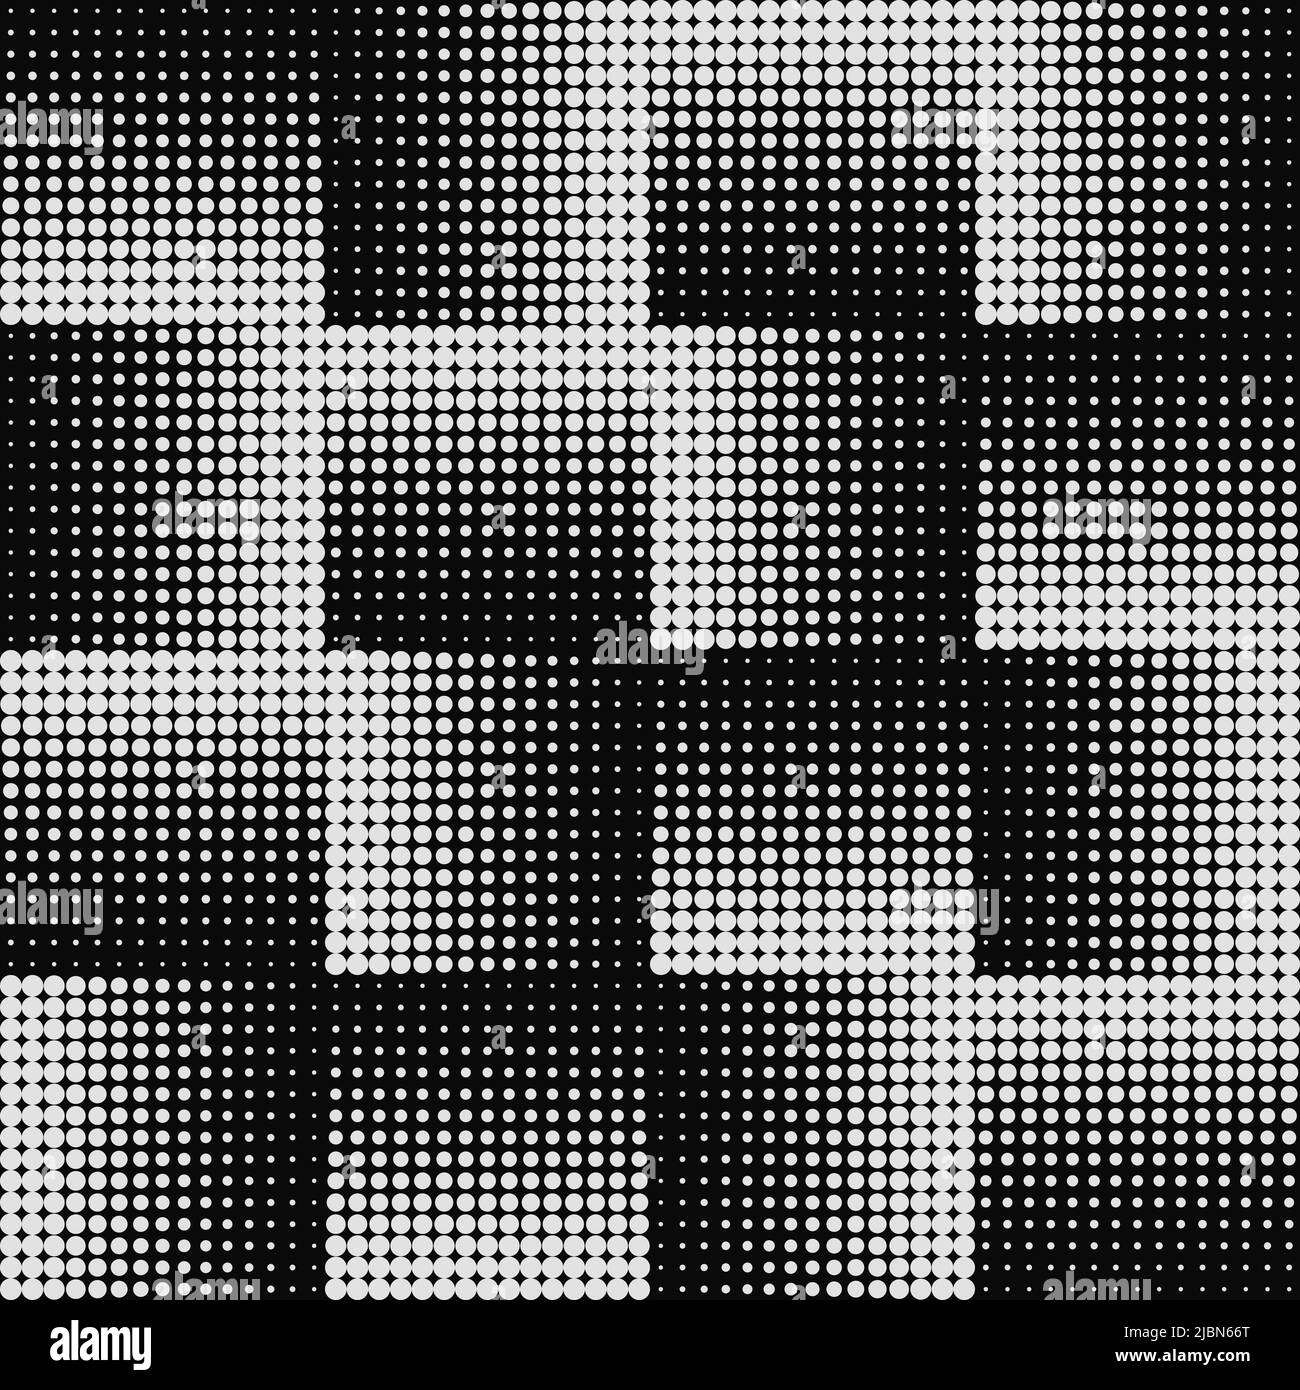 Abstraktes Grunge-Raster-Halbton-Hintergrundmuster mit Punktmuster. Getupftes schwarz-weißes Premium-Vektorlinien-Bild. Optische Täuschung. Endlos Stock Vektor